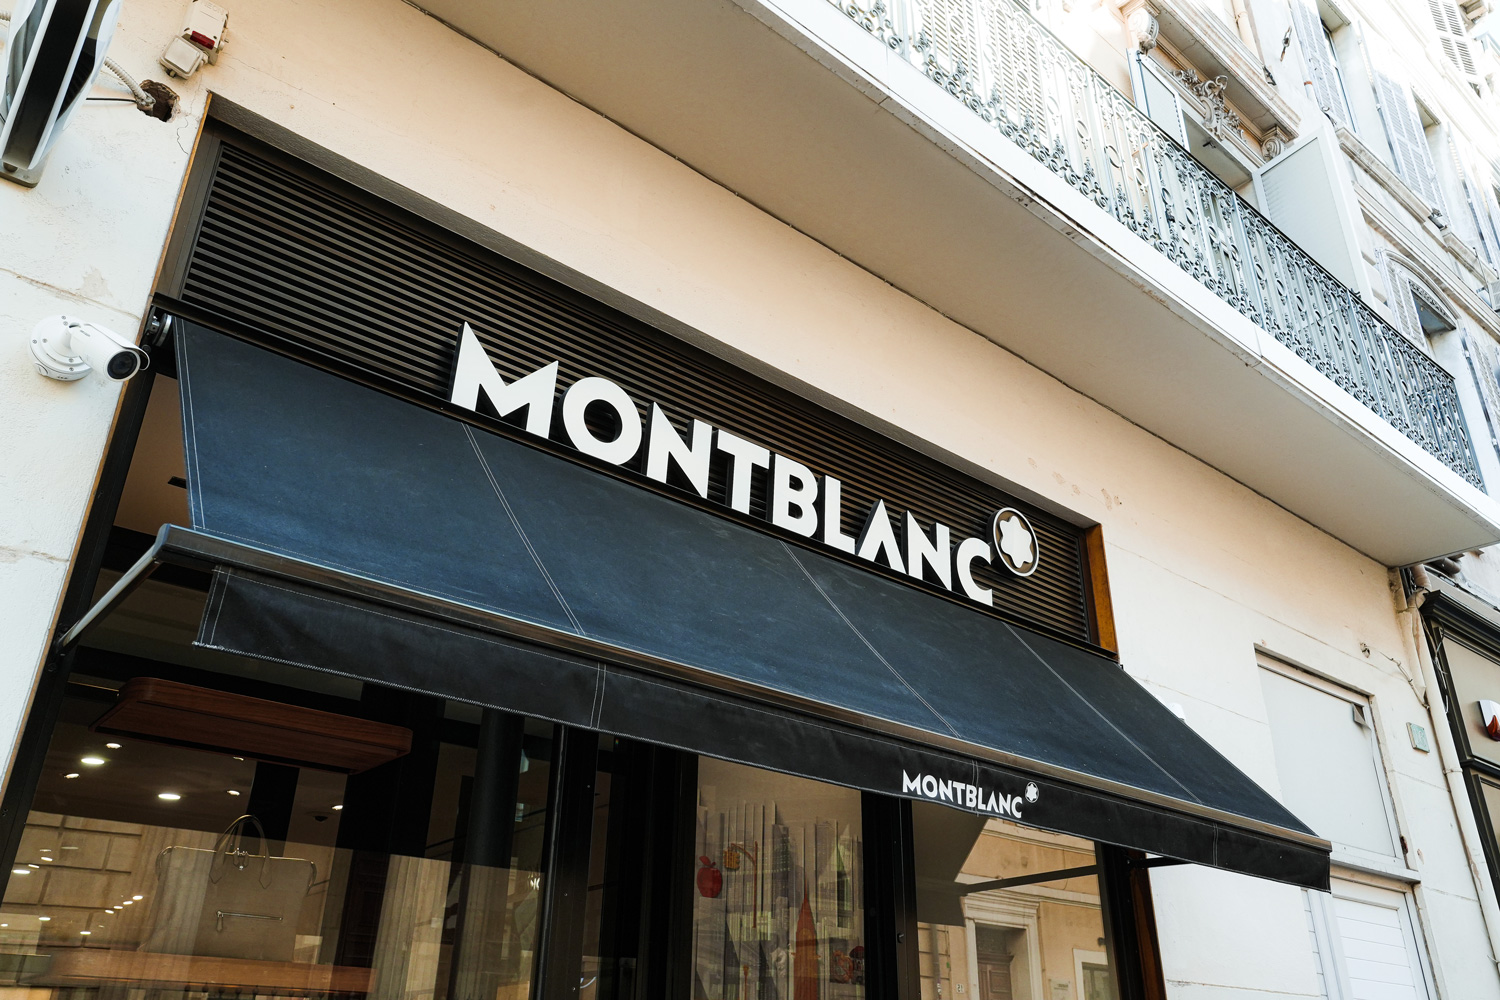 Montblanc Marseille